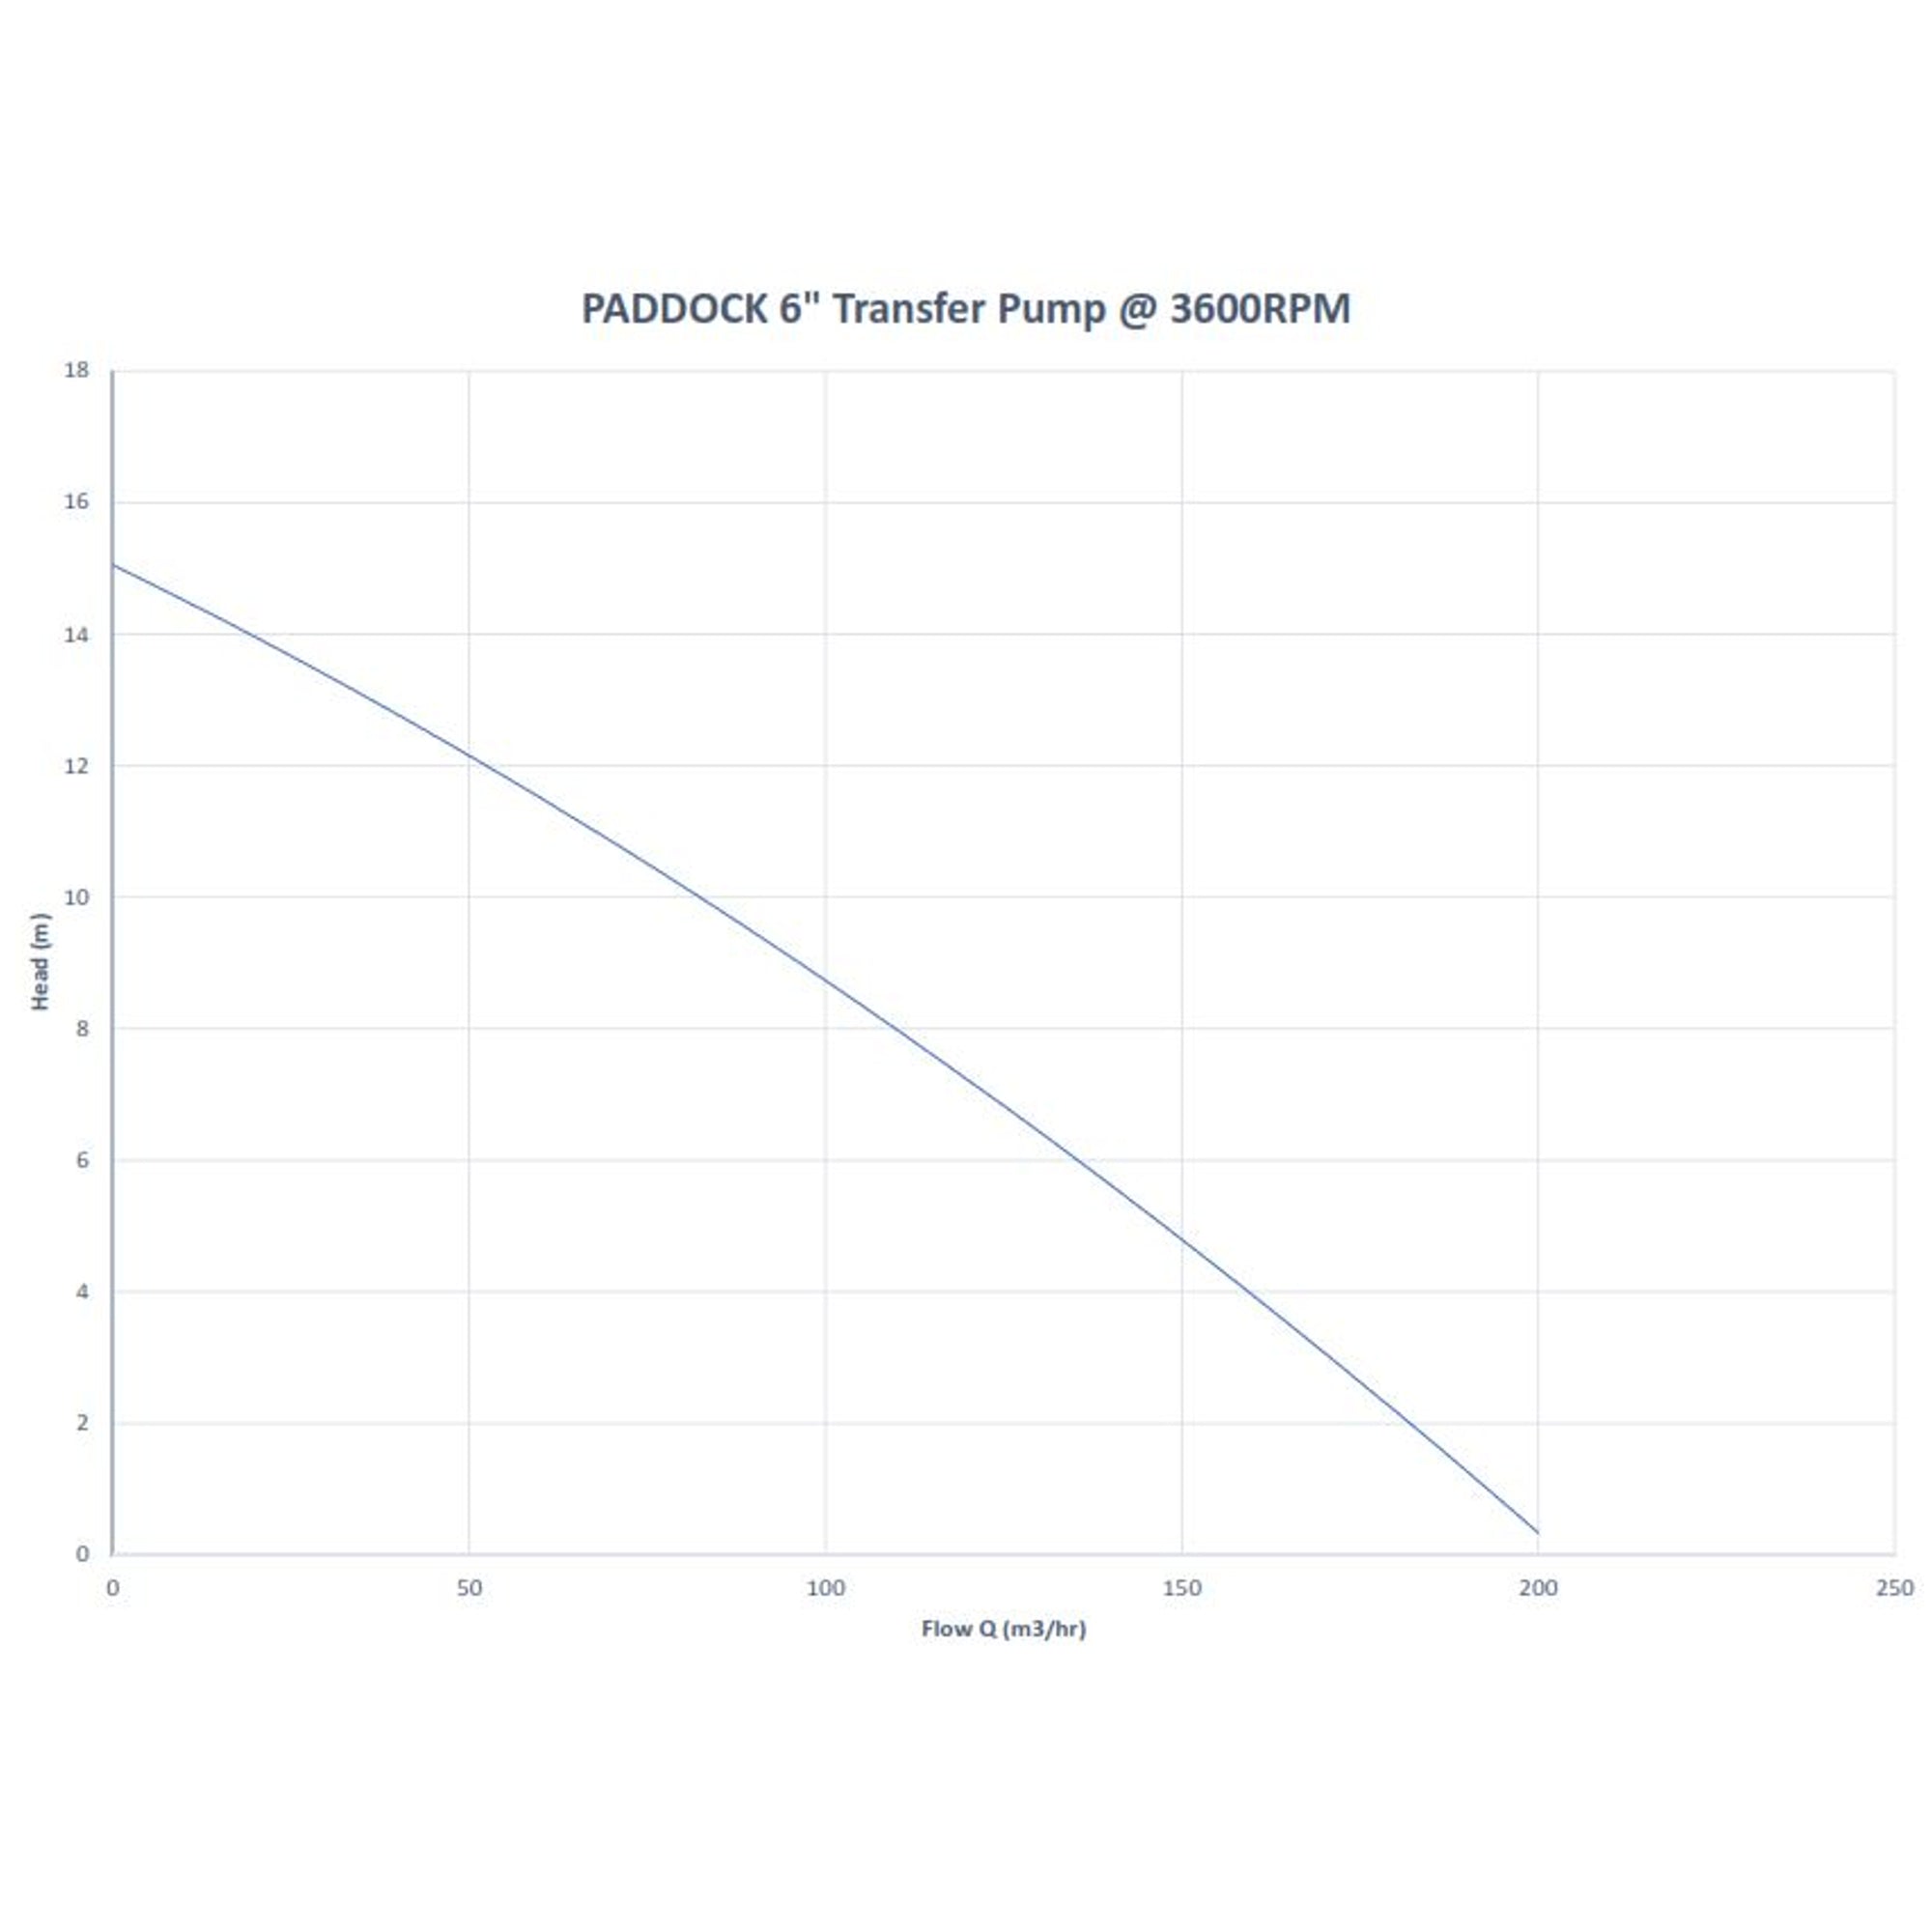 PADDOCK diesel transfer pump 4" water performance curve